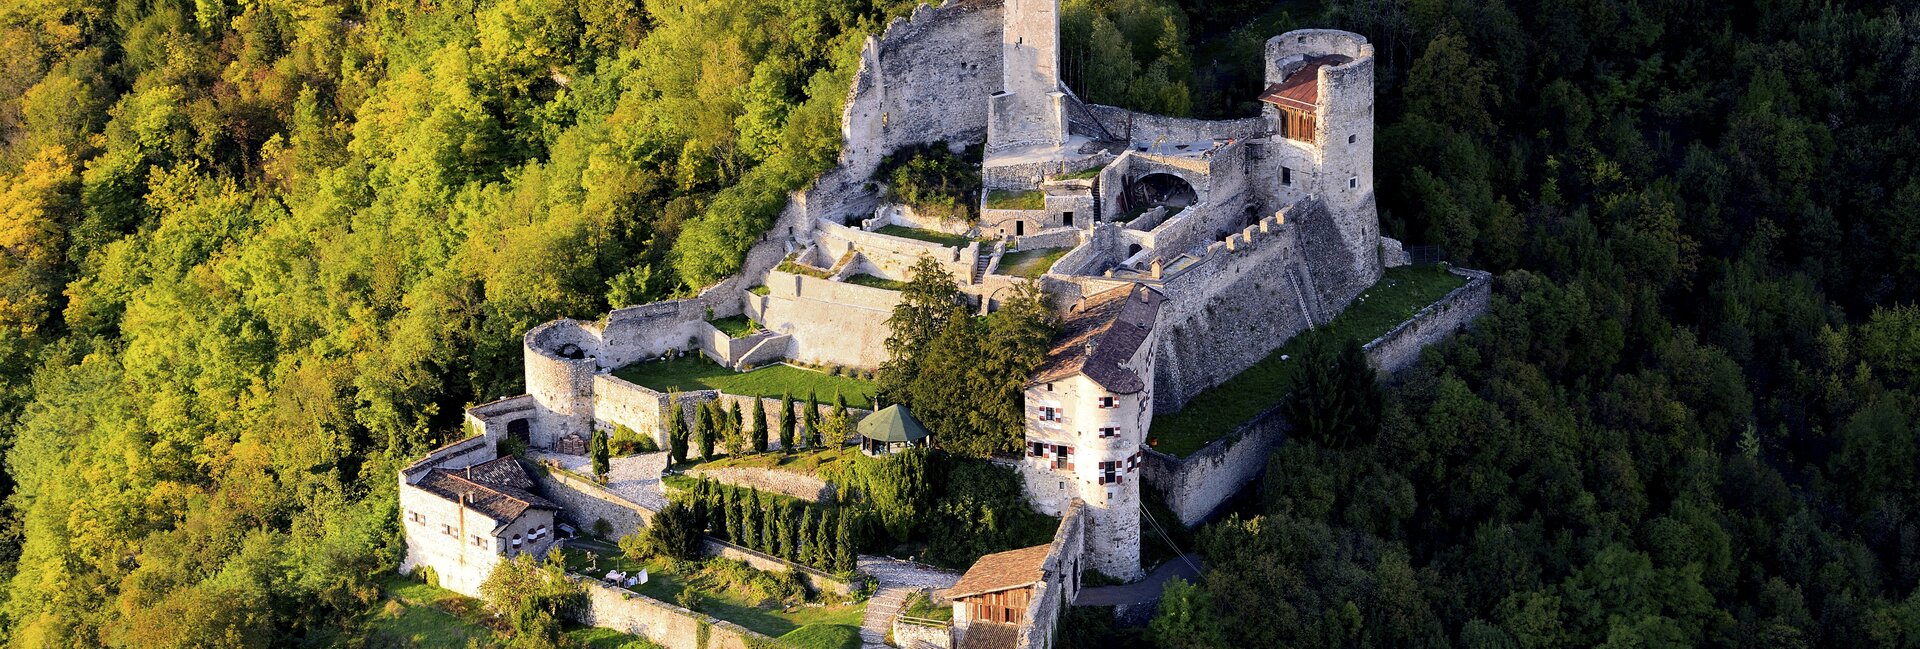 Valsugana - Borgo Valsugana - Castel Telvana
